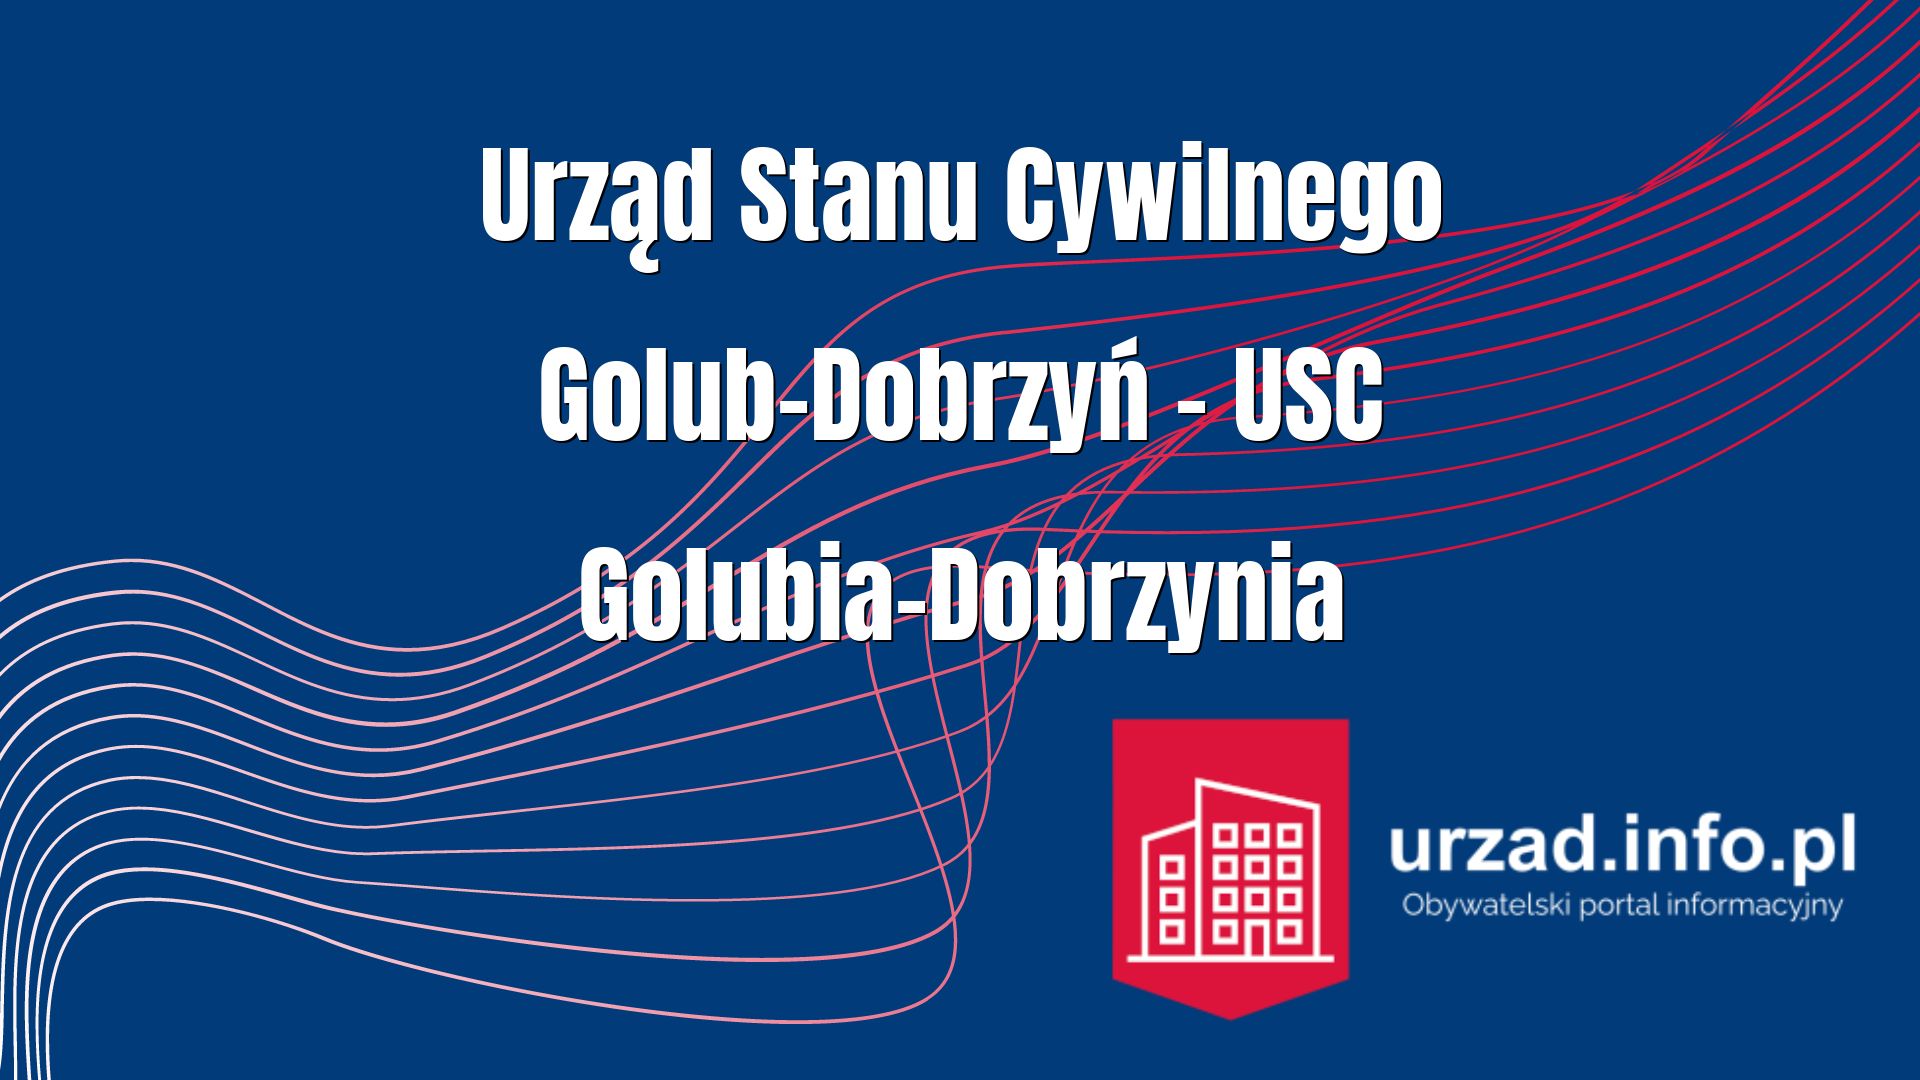 Urząd Stanu Cywilnego Golub-Dobrzyń – USC Golubia-Dobrzynia